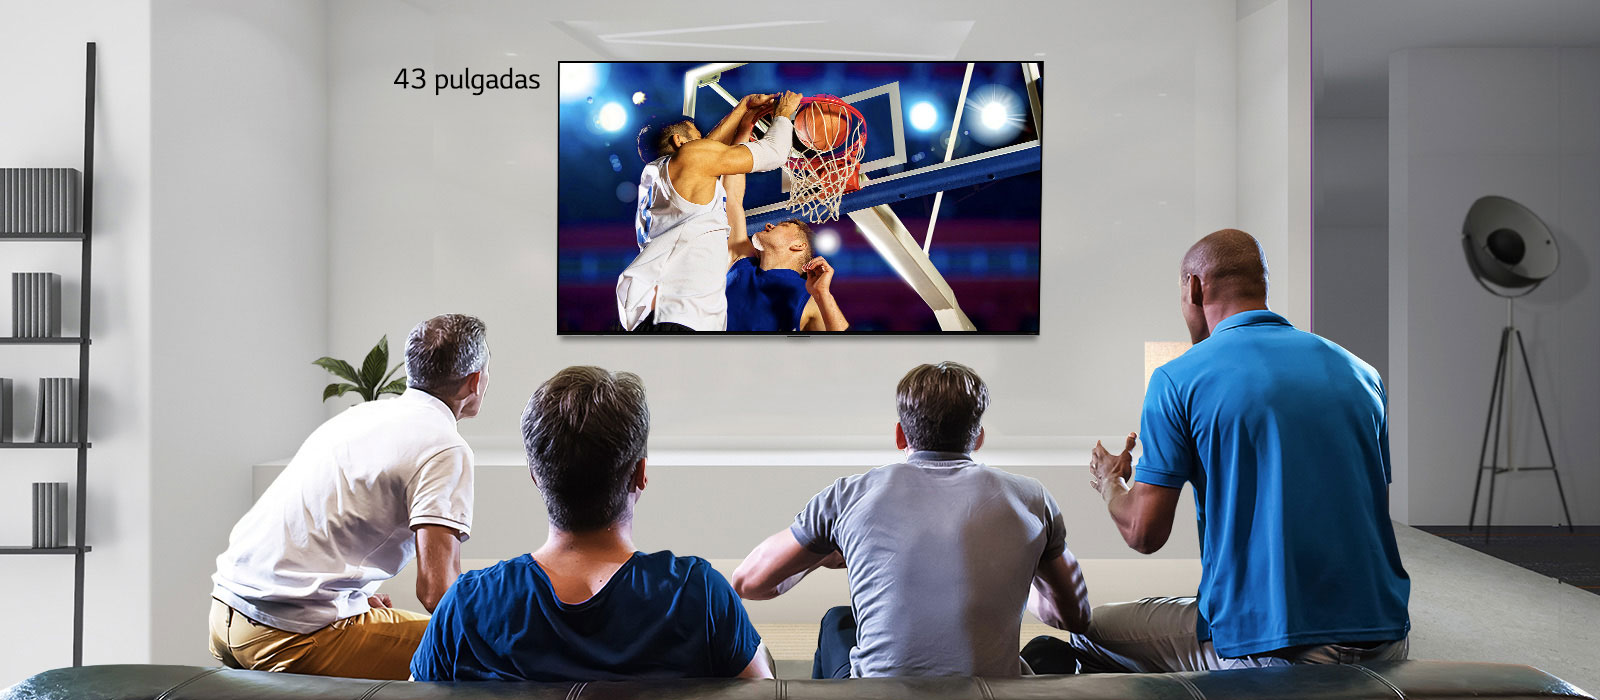 Vista trasera de un televisor instalado en la pared que muestra un partido de baloncesto con cuatro hombres mirando. El desplazamiento de izquierda a derecha muestra la diferencia de tamaño entre una pantalla de 43 y 86 pulgadas.